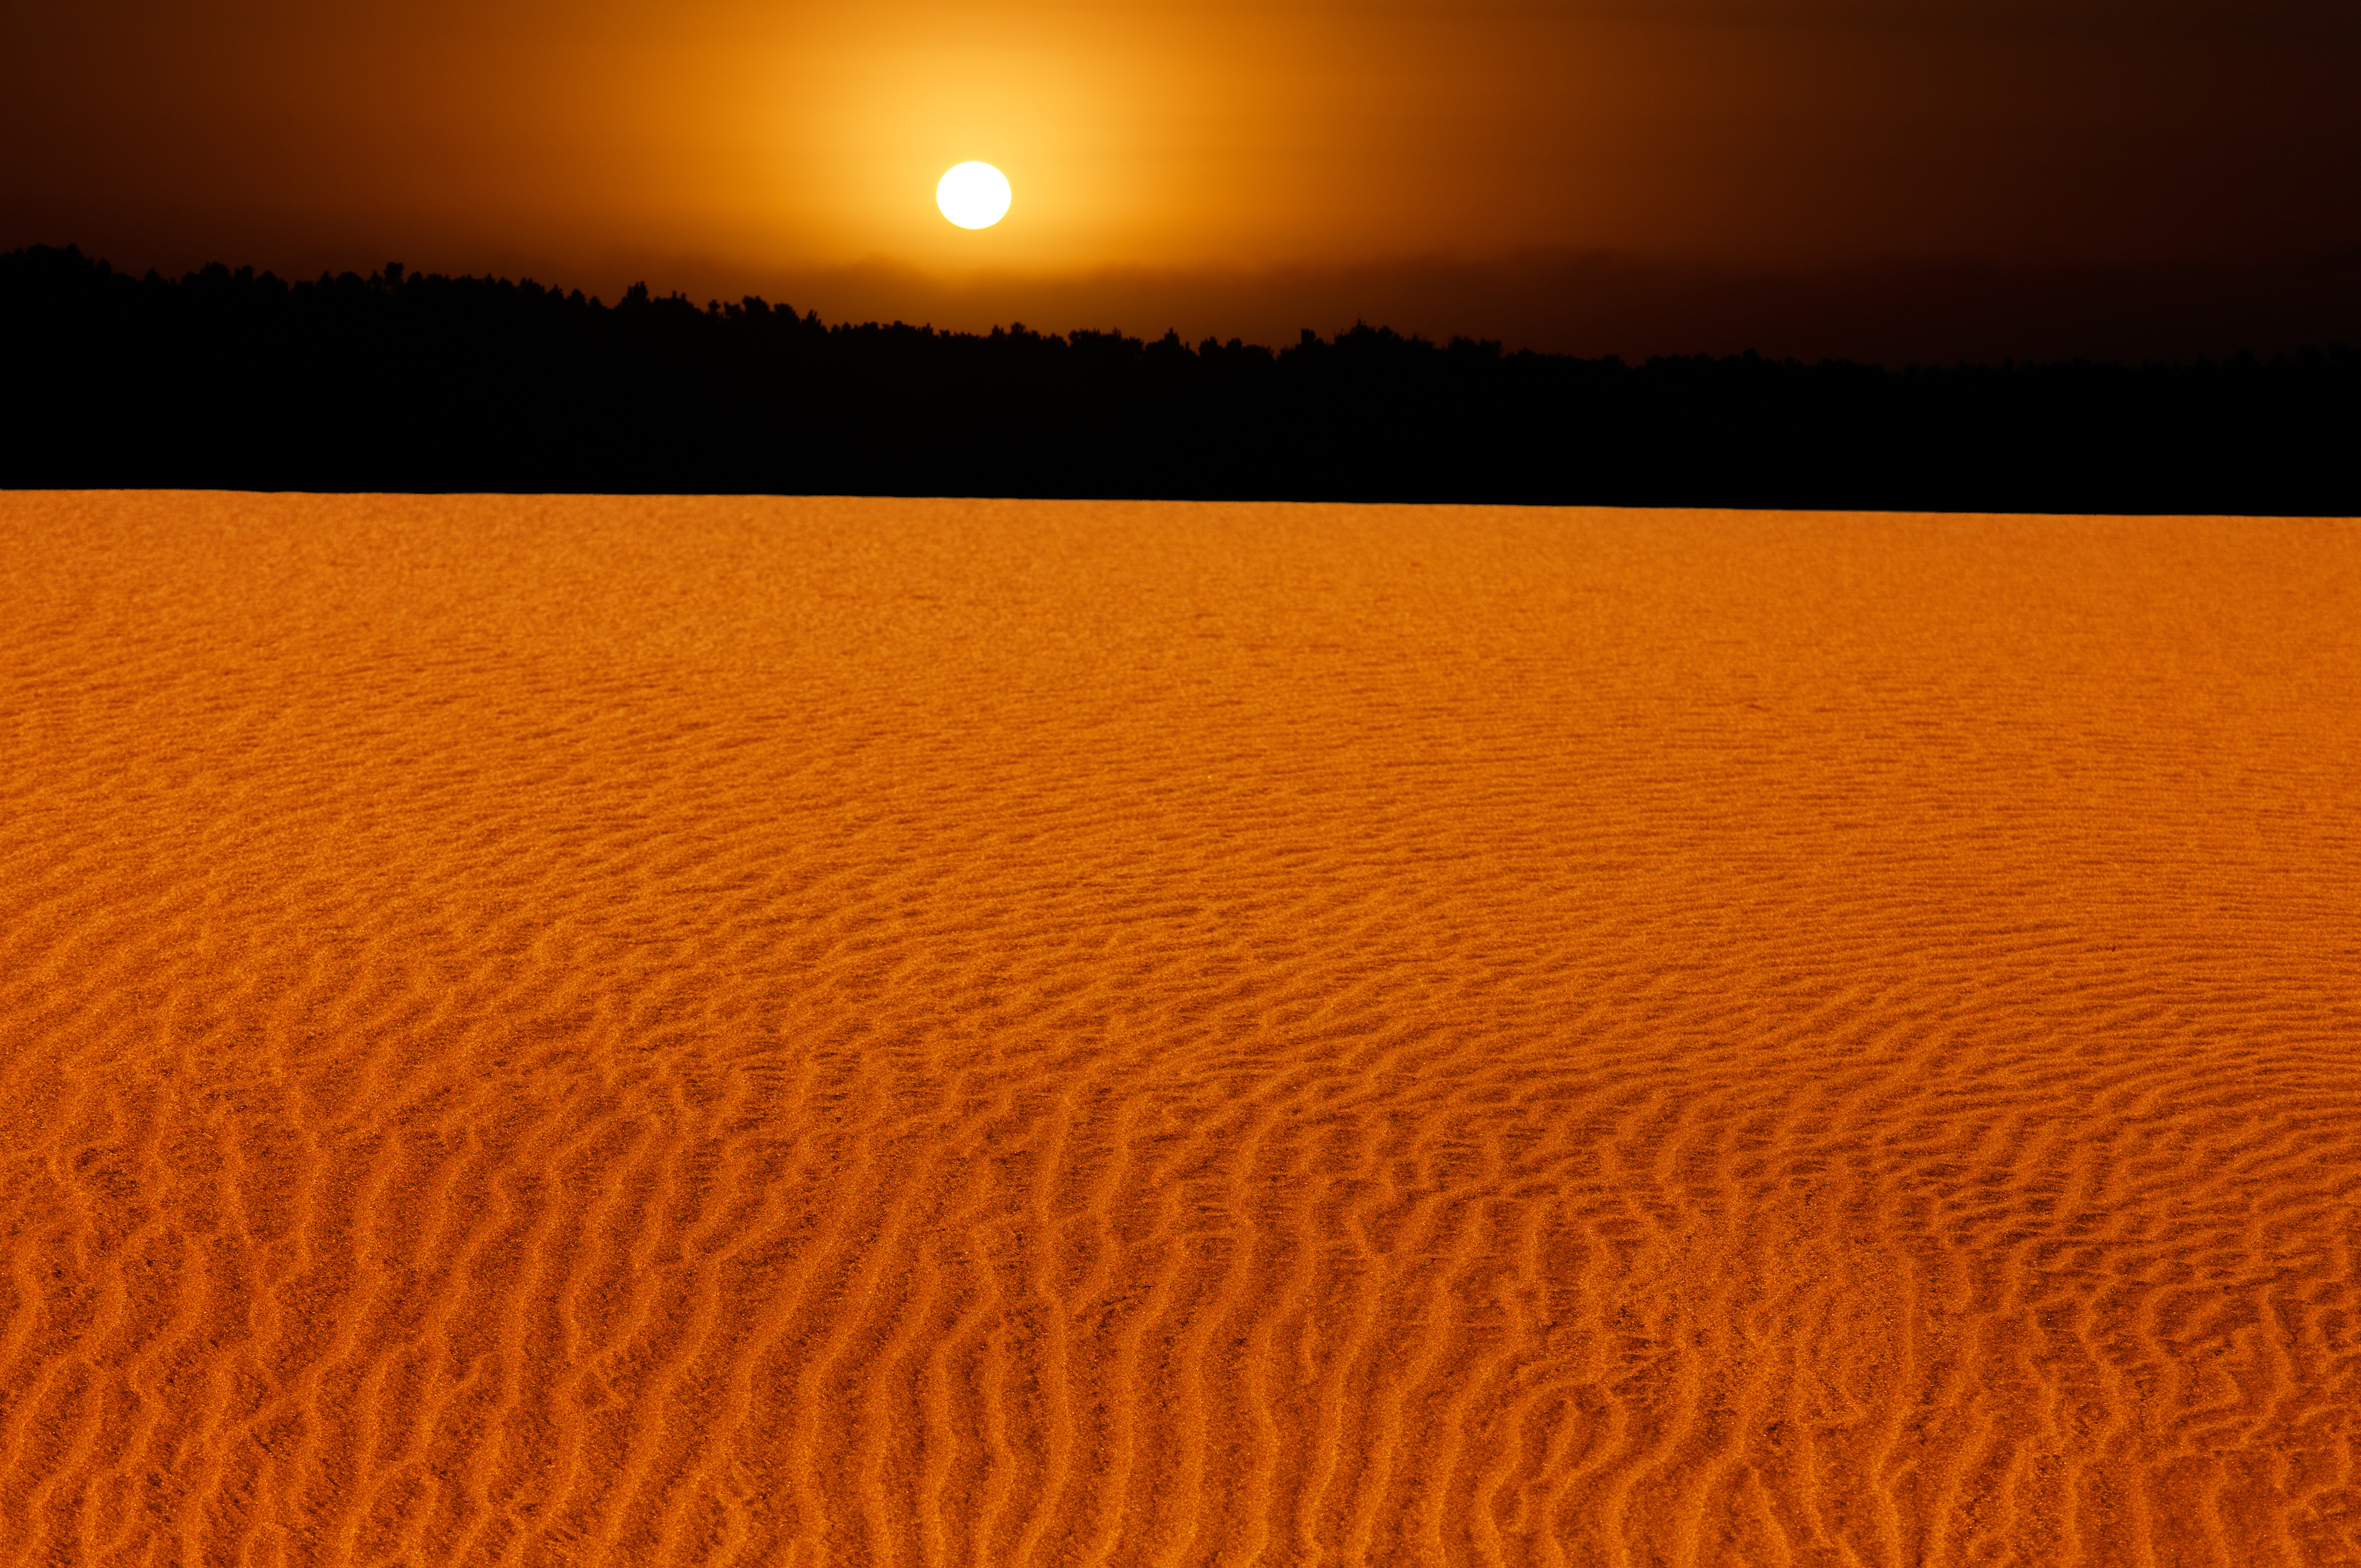 Неживая природа в пустыне. Пустыня. Оранжевая пустыня. Пустыня с оранжевым песком. Закат в пустыне.